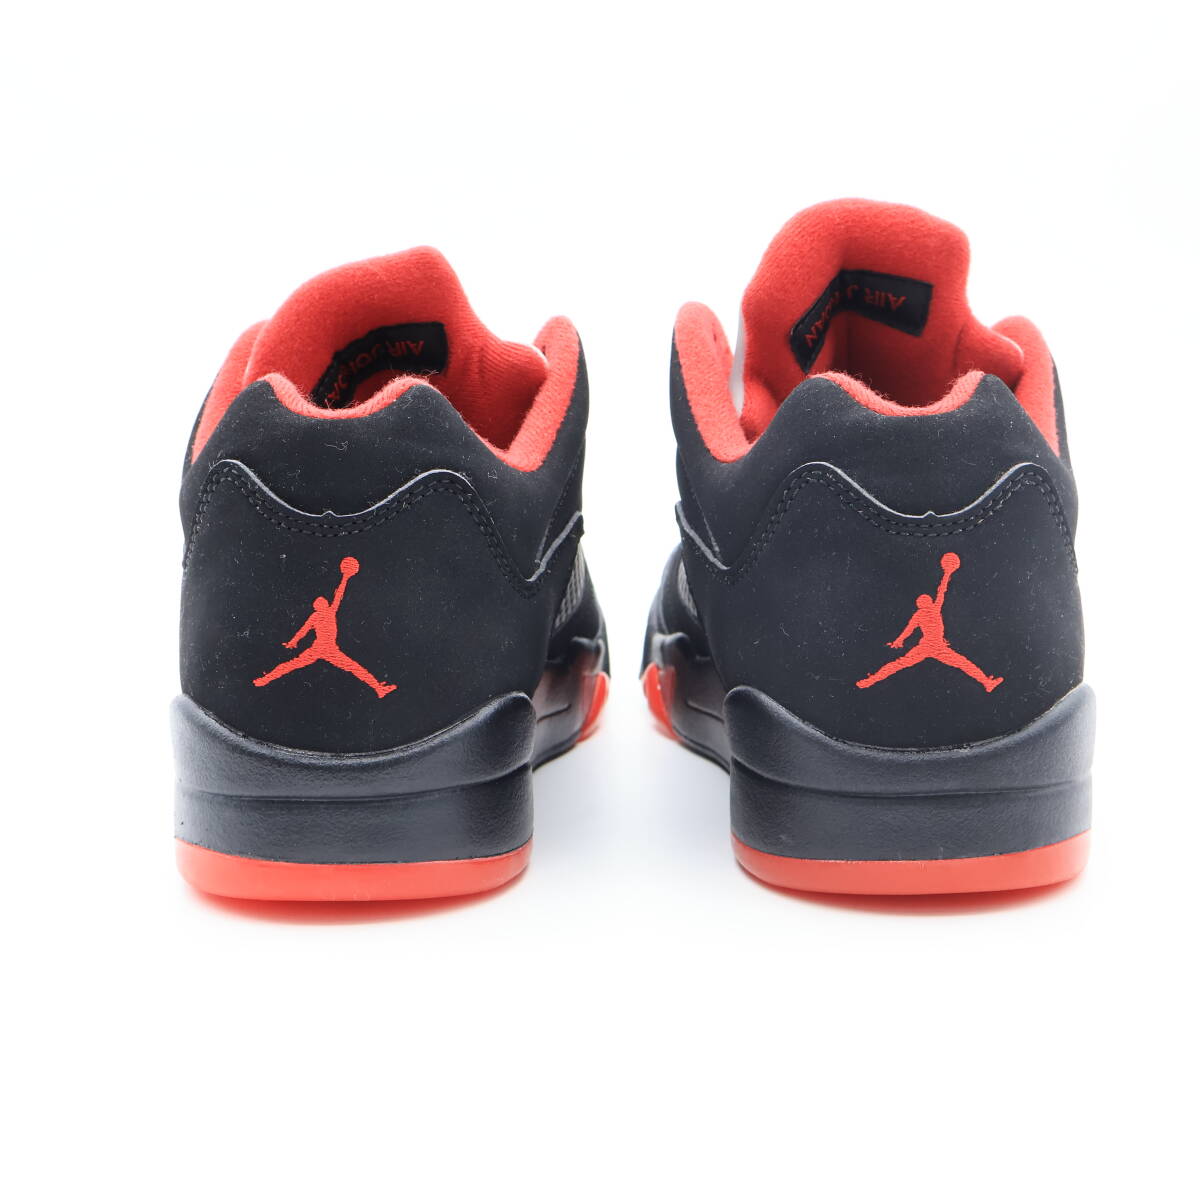 【新品未使用】Nike Air Jordan 5 RETRO Low Alternate 90 ナイキ エアジョーダン5 レトロ ロー オルタネイト 90 819171-001 28.5cm_画像7